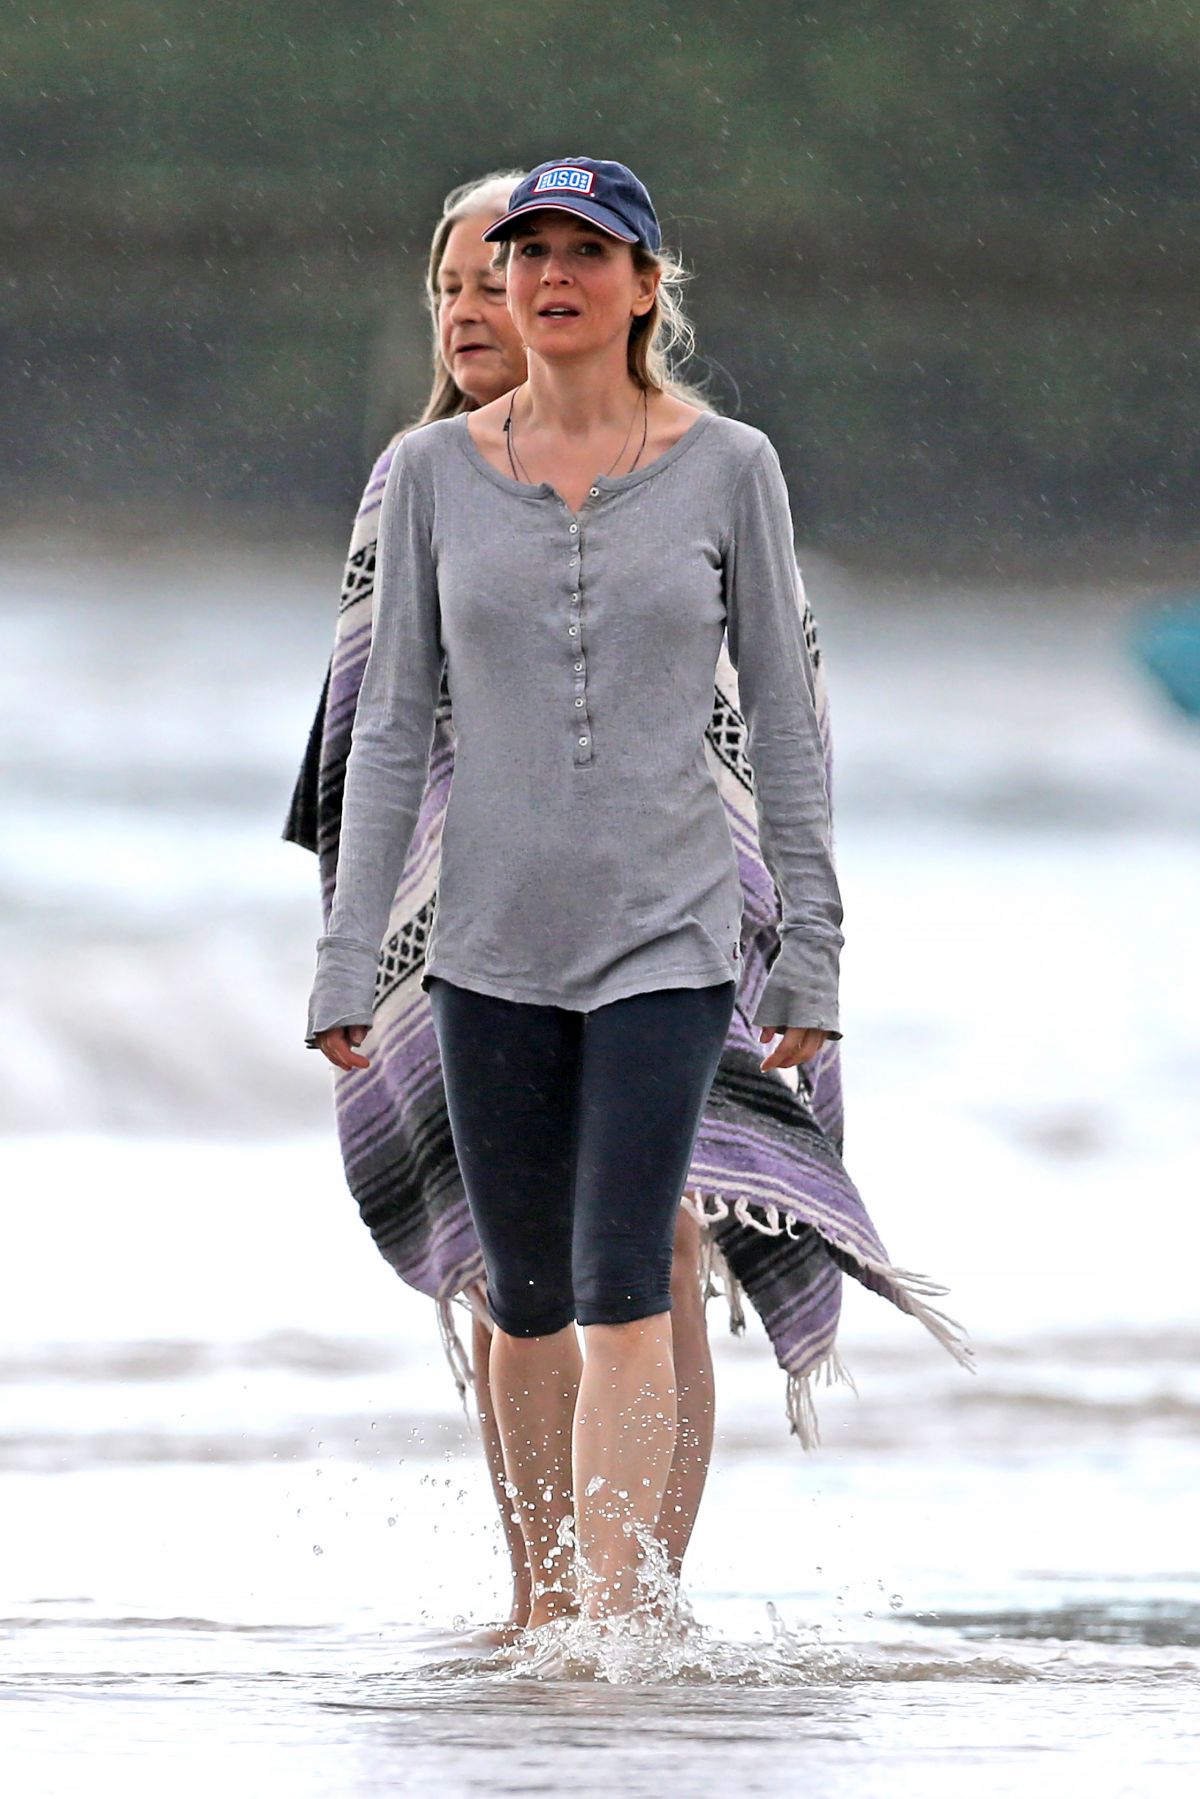 RENE ZELLWEGER in Leggings at a Beach in Hawaii.